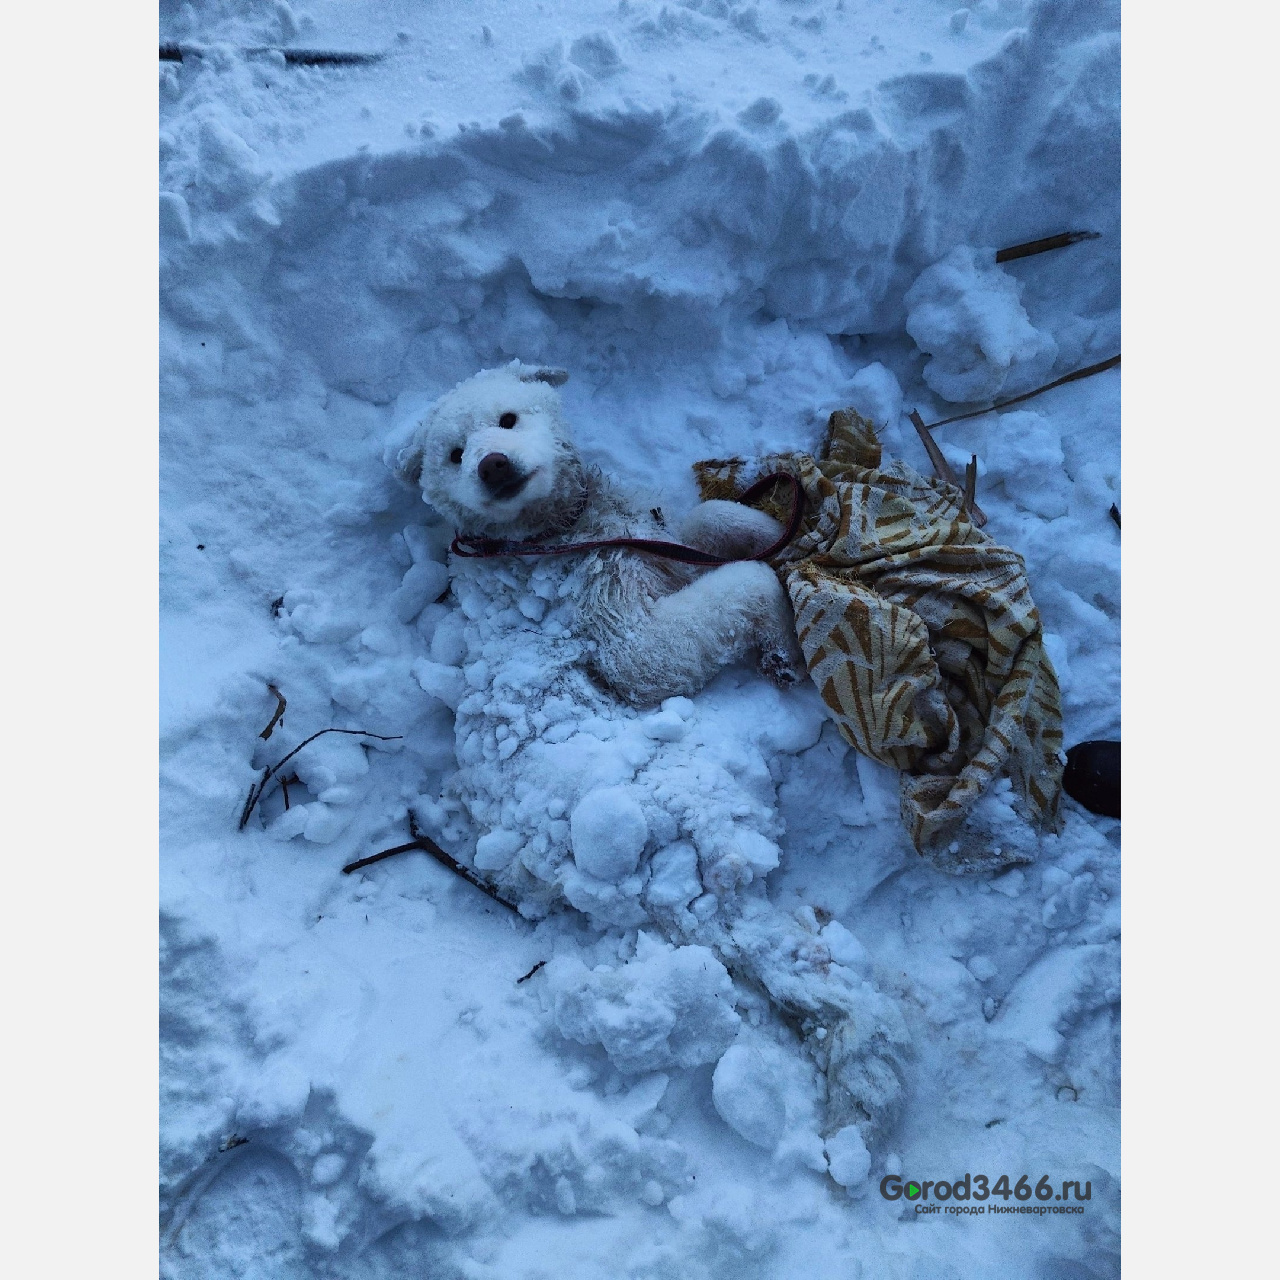 Жители Нижневартовска спасли собаку, мерзнувшую в снегу, после ДТП